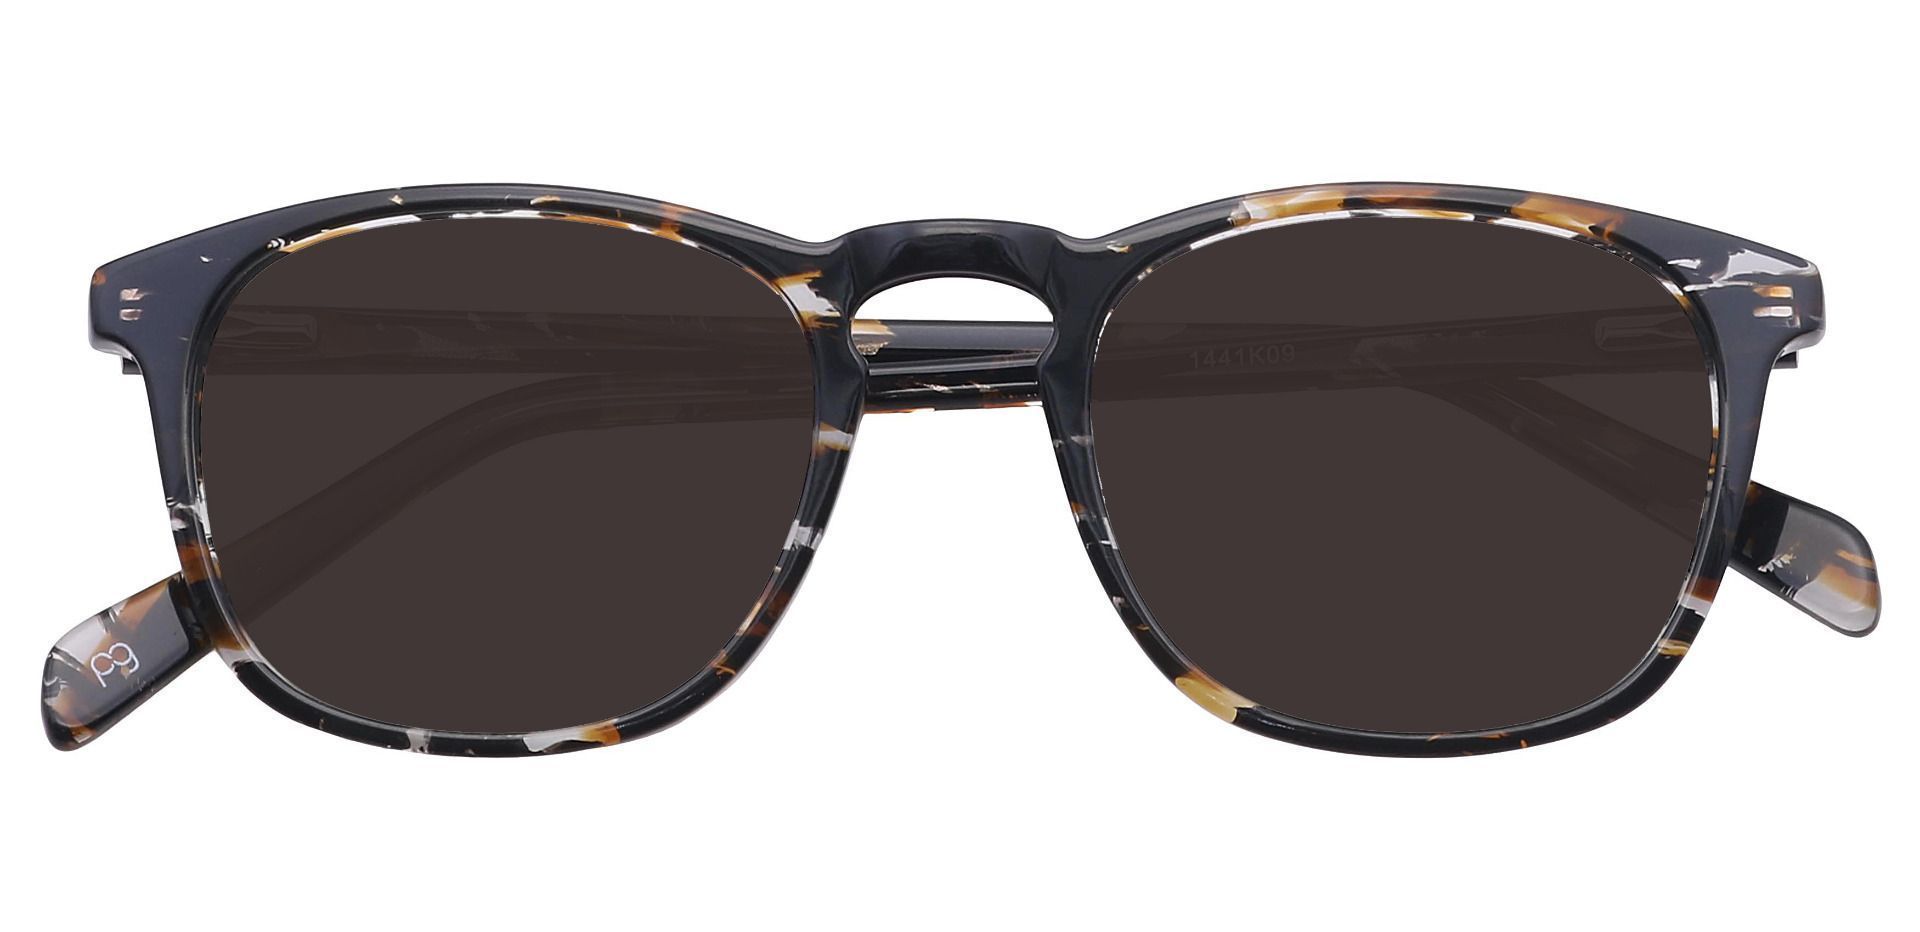 Venti Square Progressive Sunglasses - Black Frame With Gray Lenses